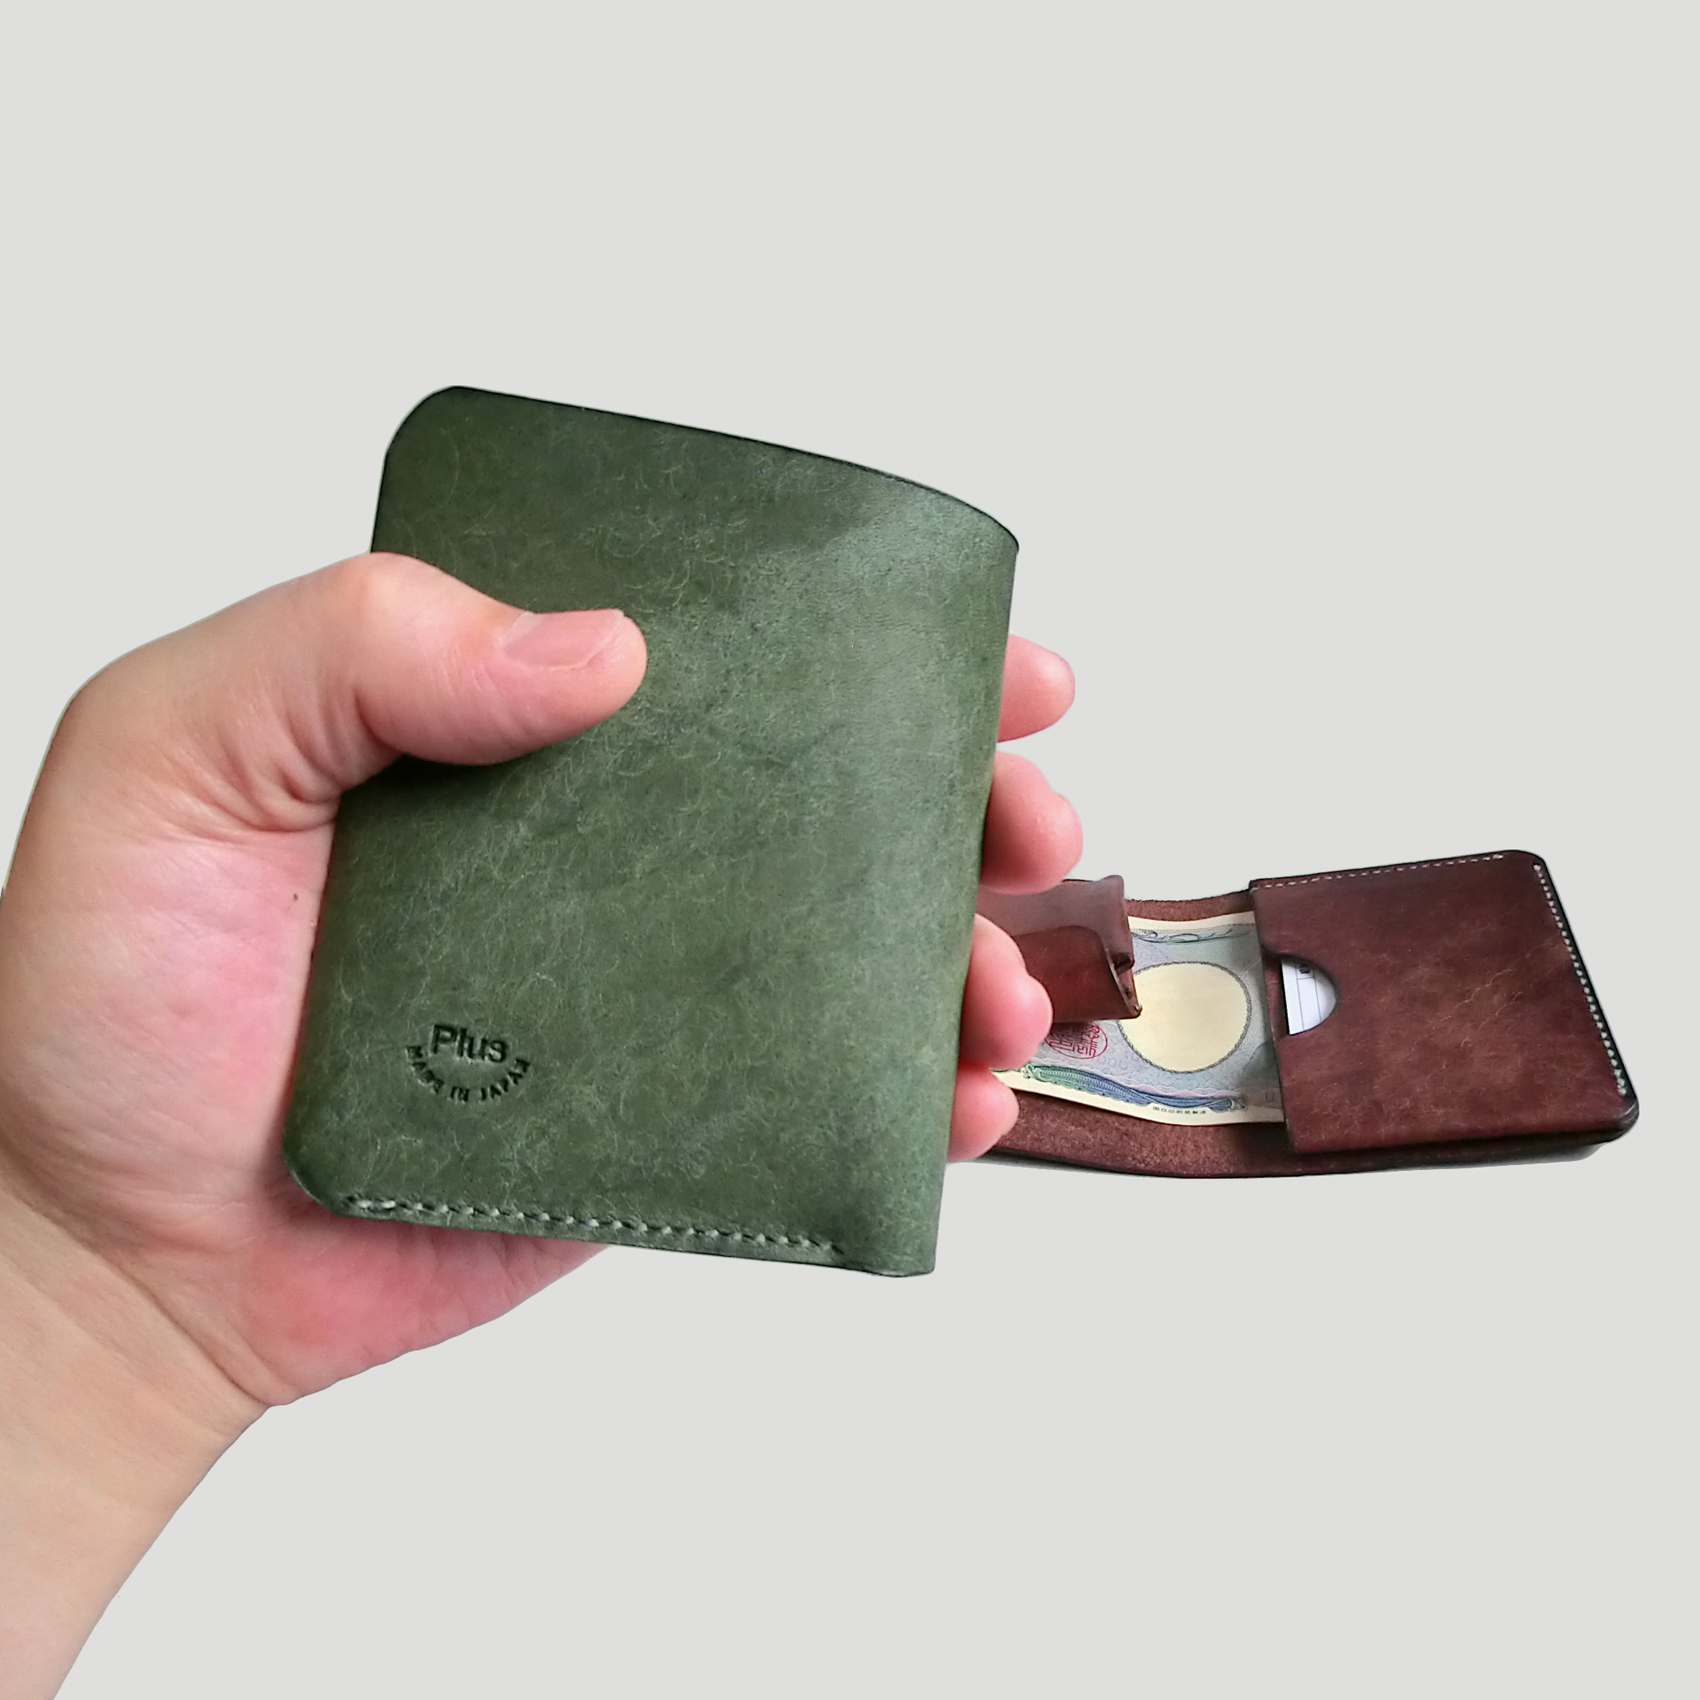 「コンパクト」で「シンプル」、身軽な財布です